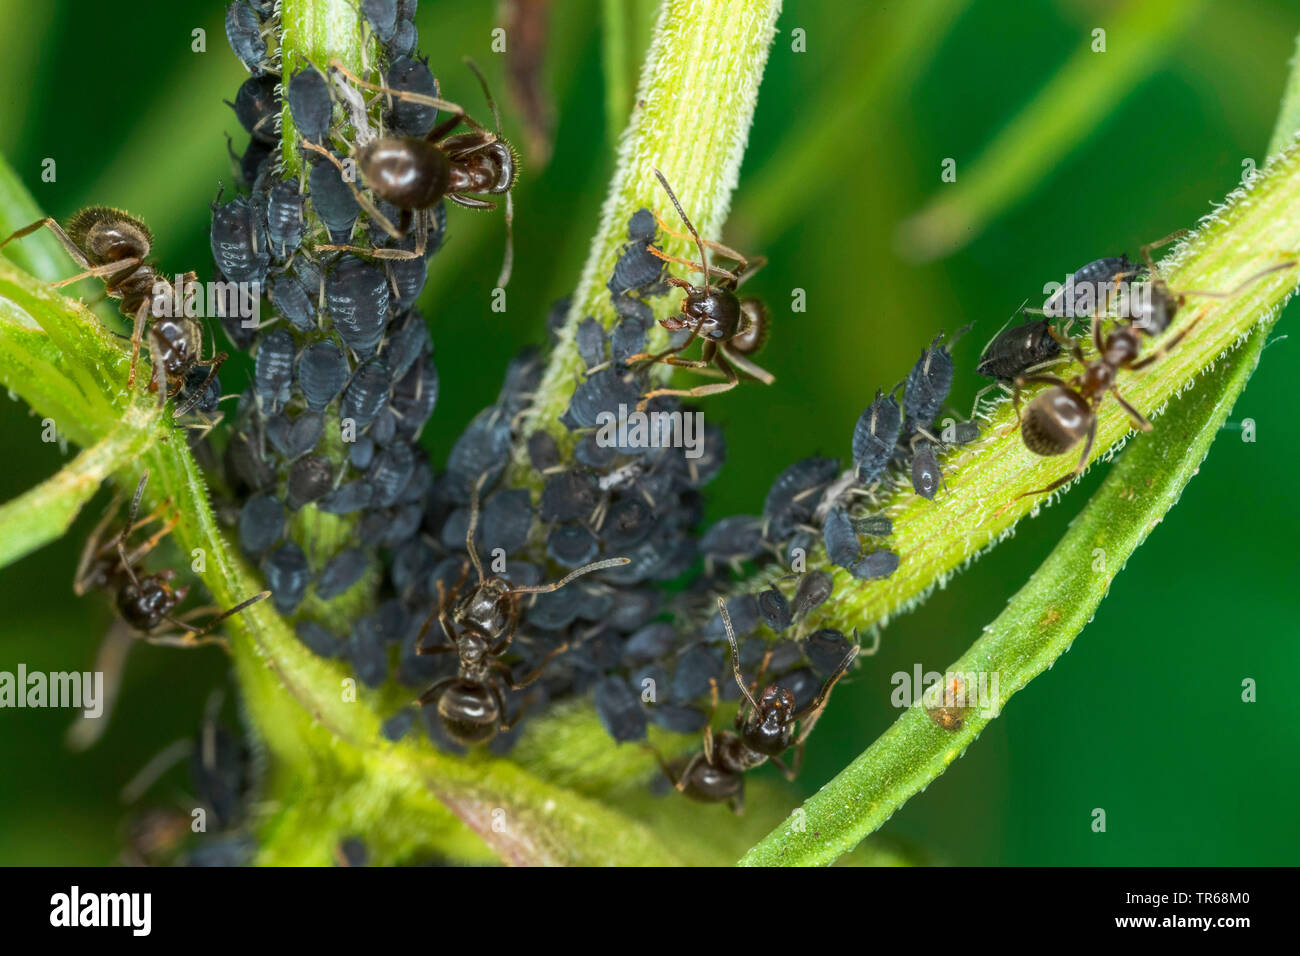 Puceron noir de la fève, les simulies, wayame noir (Aphis fabae), le haricot noir étant détenu par les pucerons, fourmis jardin Mecklembourg-Poméranie-Occidentale, Allemagne Banque D'Images